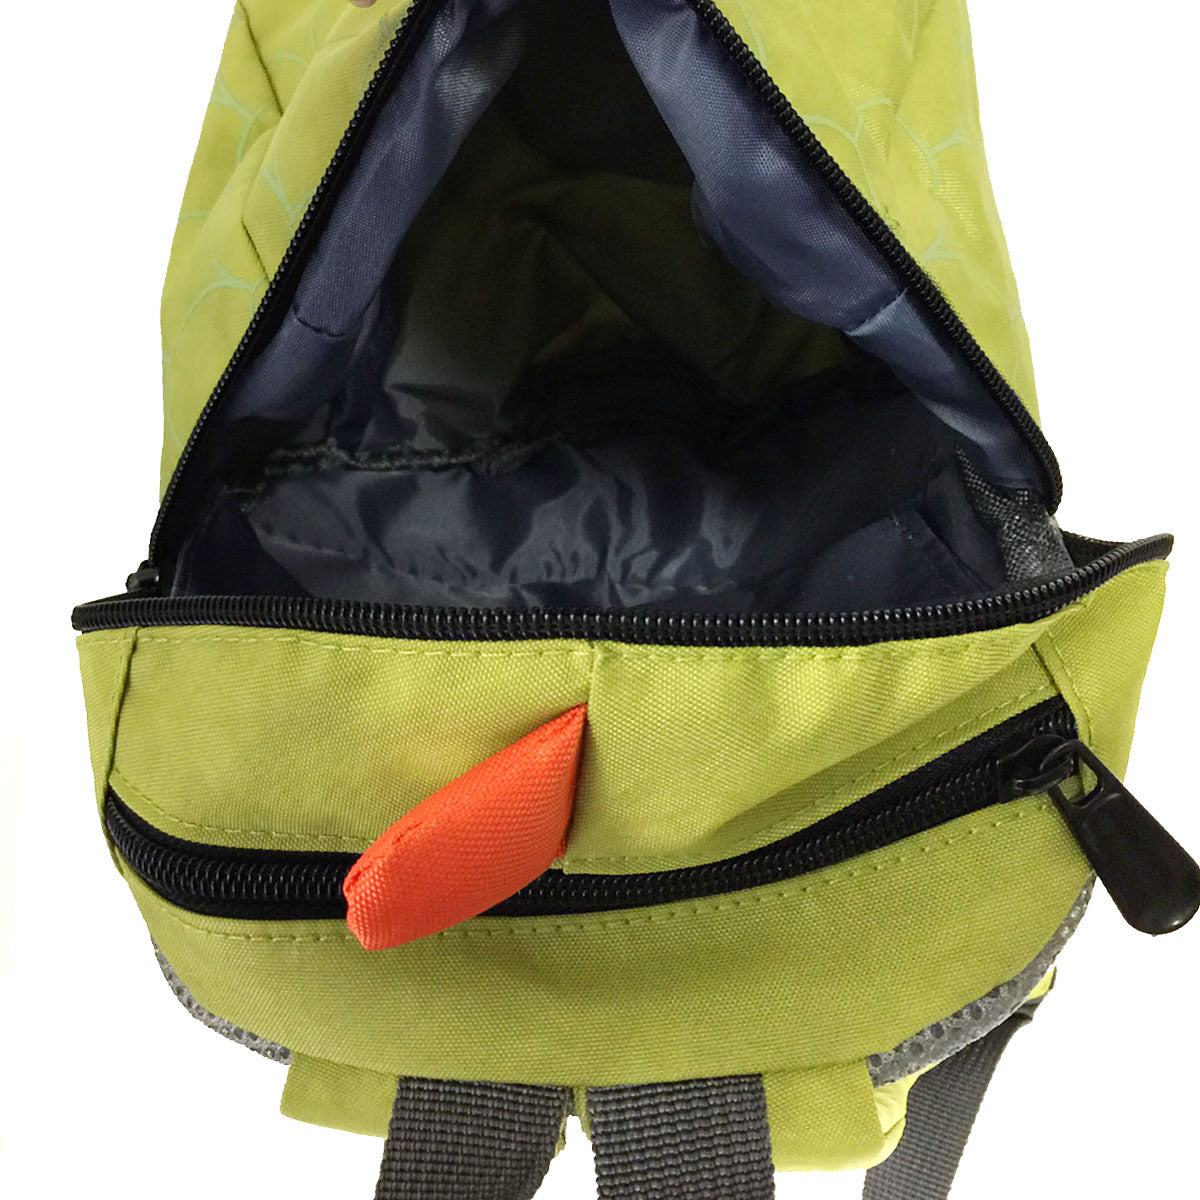 Wrapables Children's Dinosaur Backpack Schoolbag, Light Green